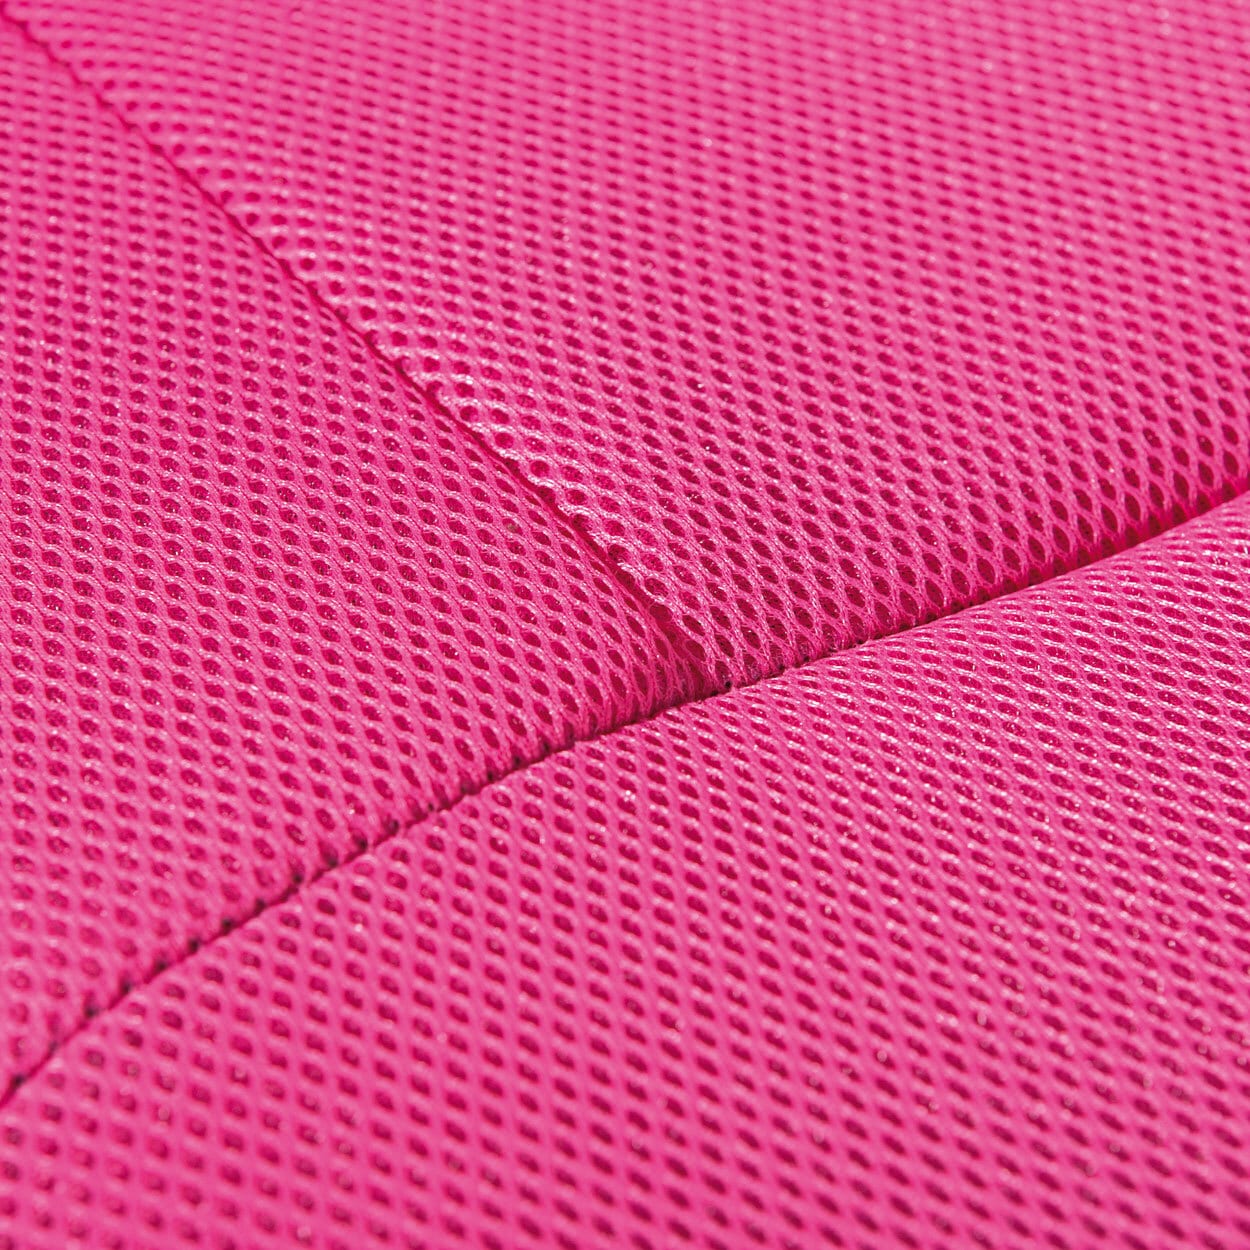 CASAVANTI Kinderstuhl ALESSIO pink 56 x 43 cm